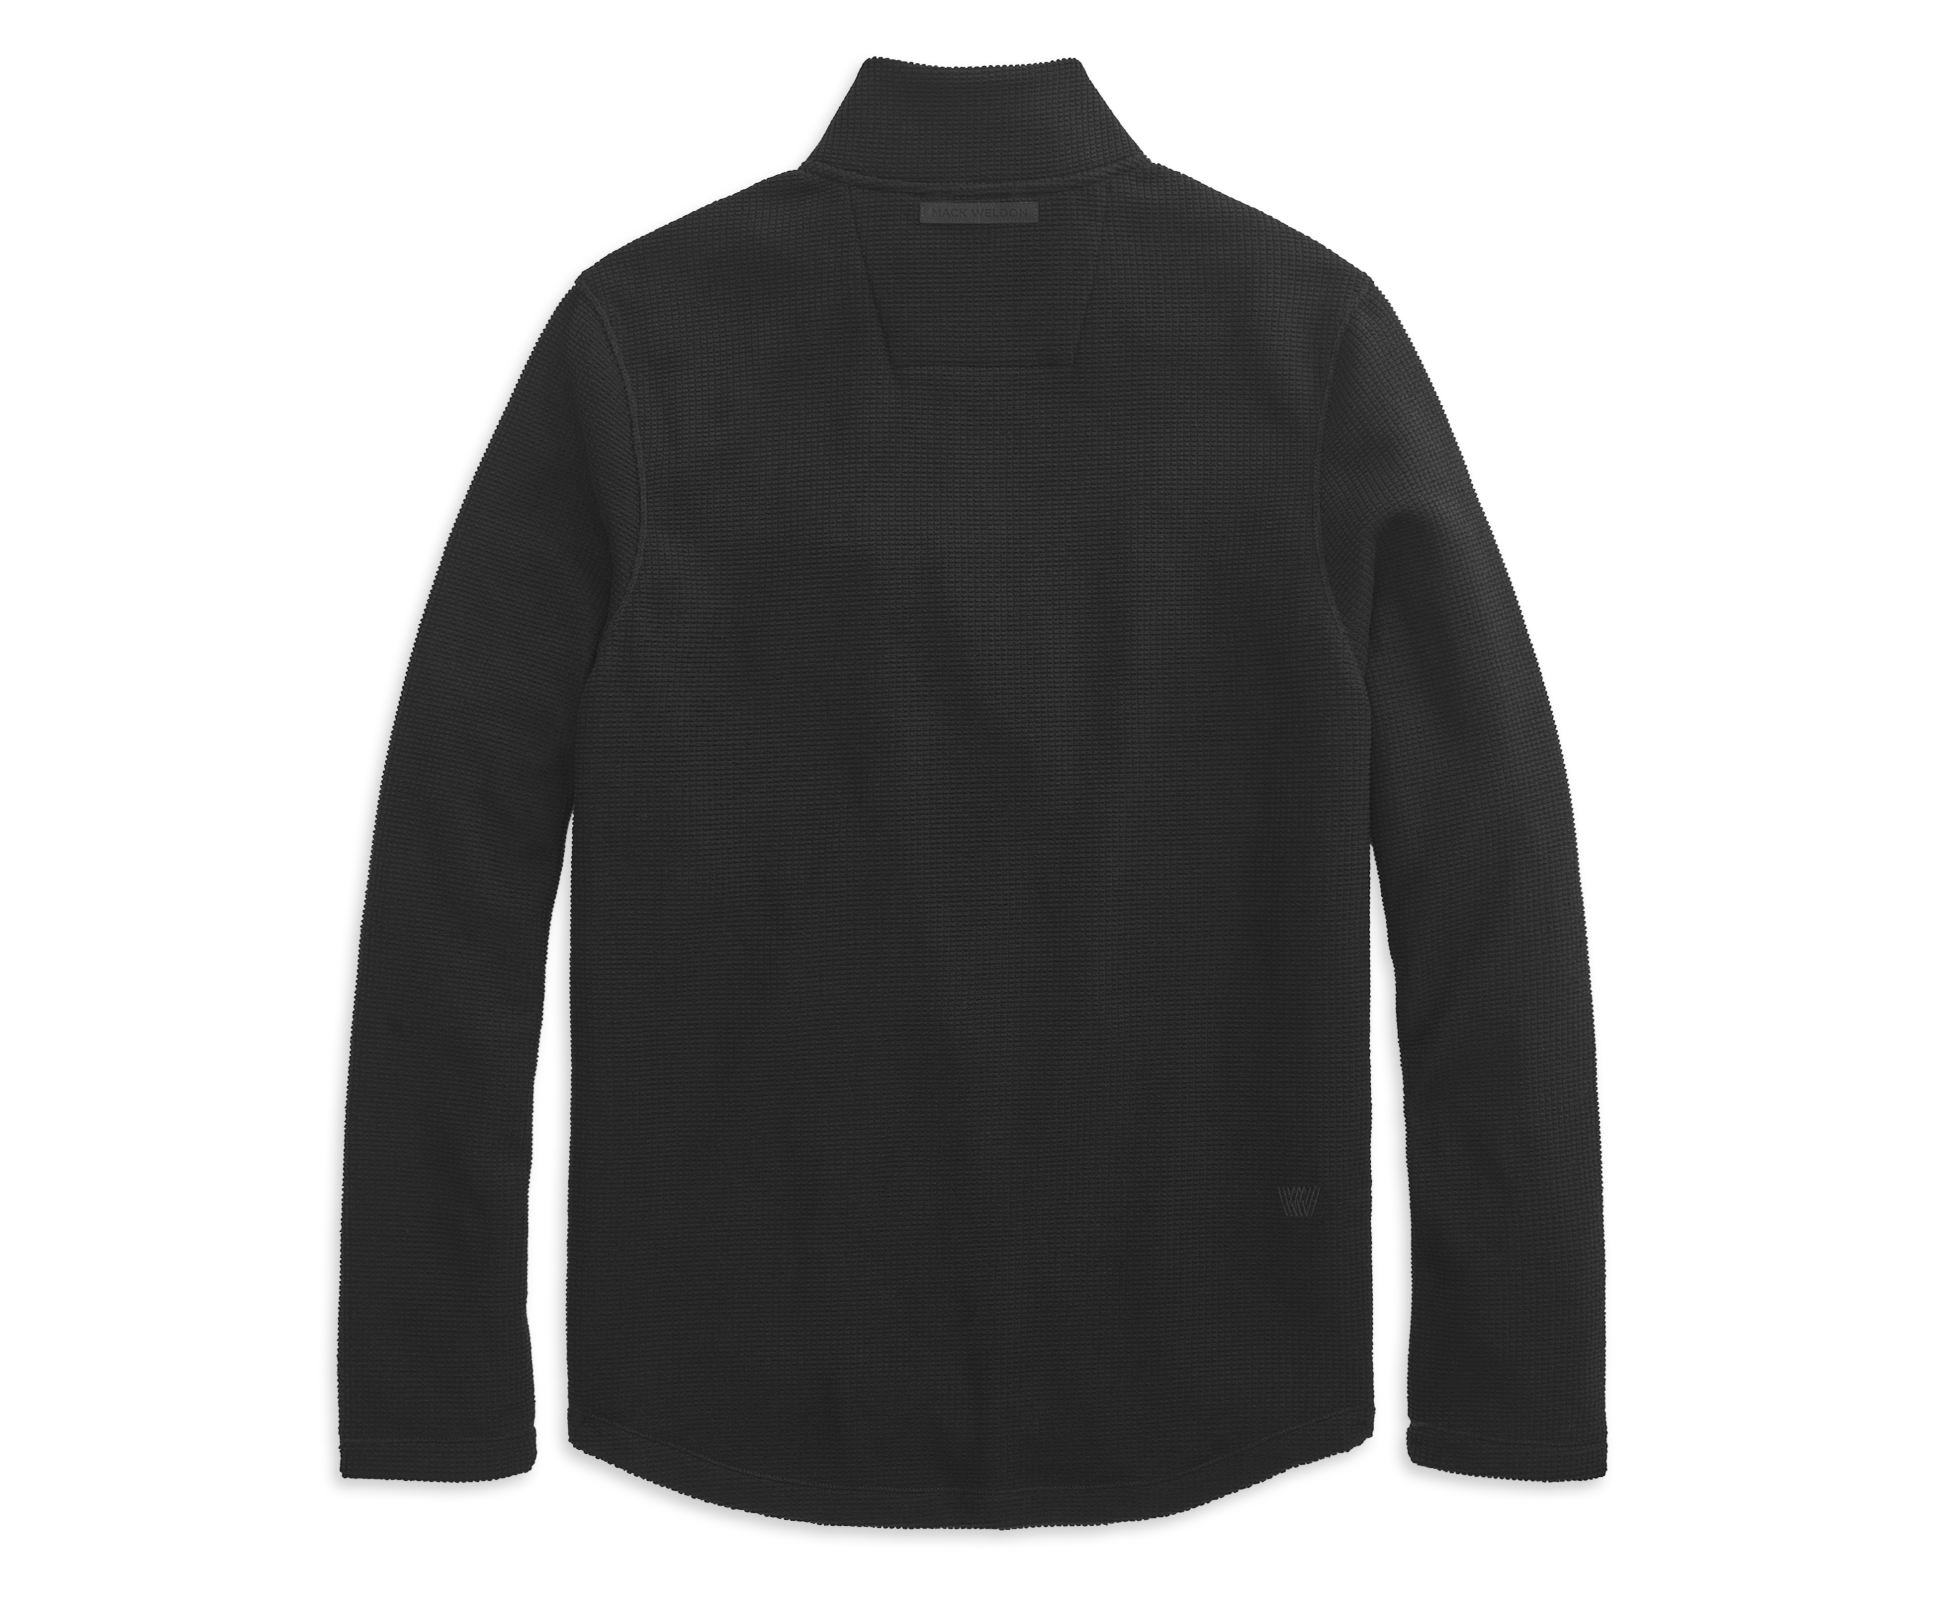 Mack Weldon Atlas Full-Zip Jacket True Black, Size: XL